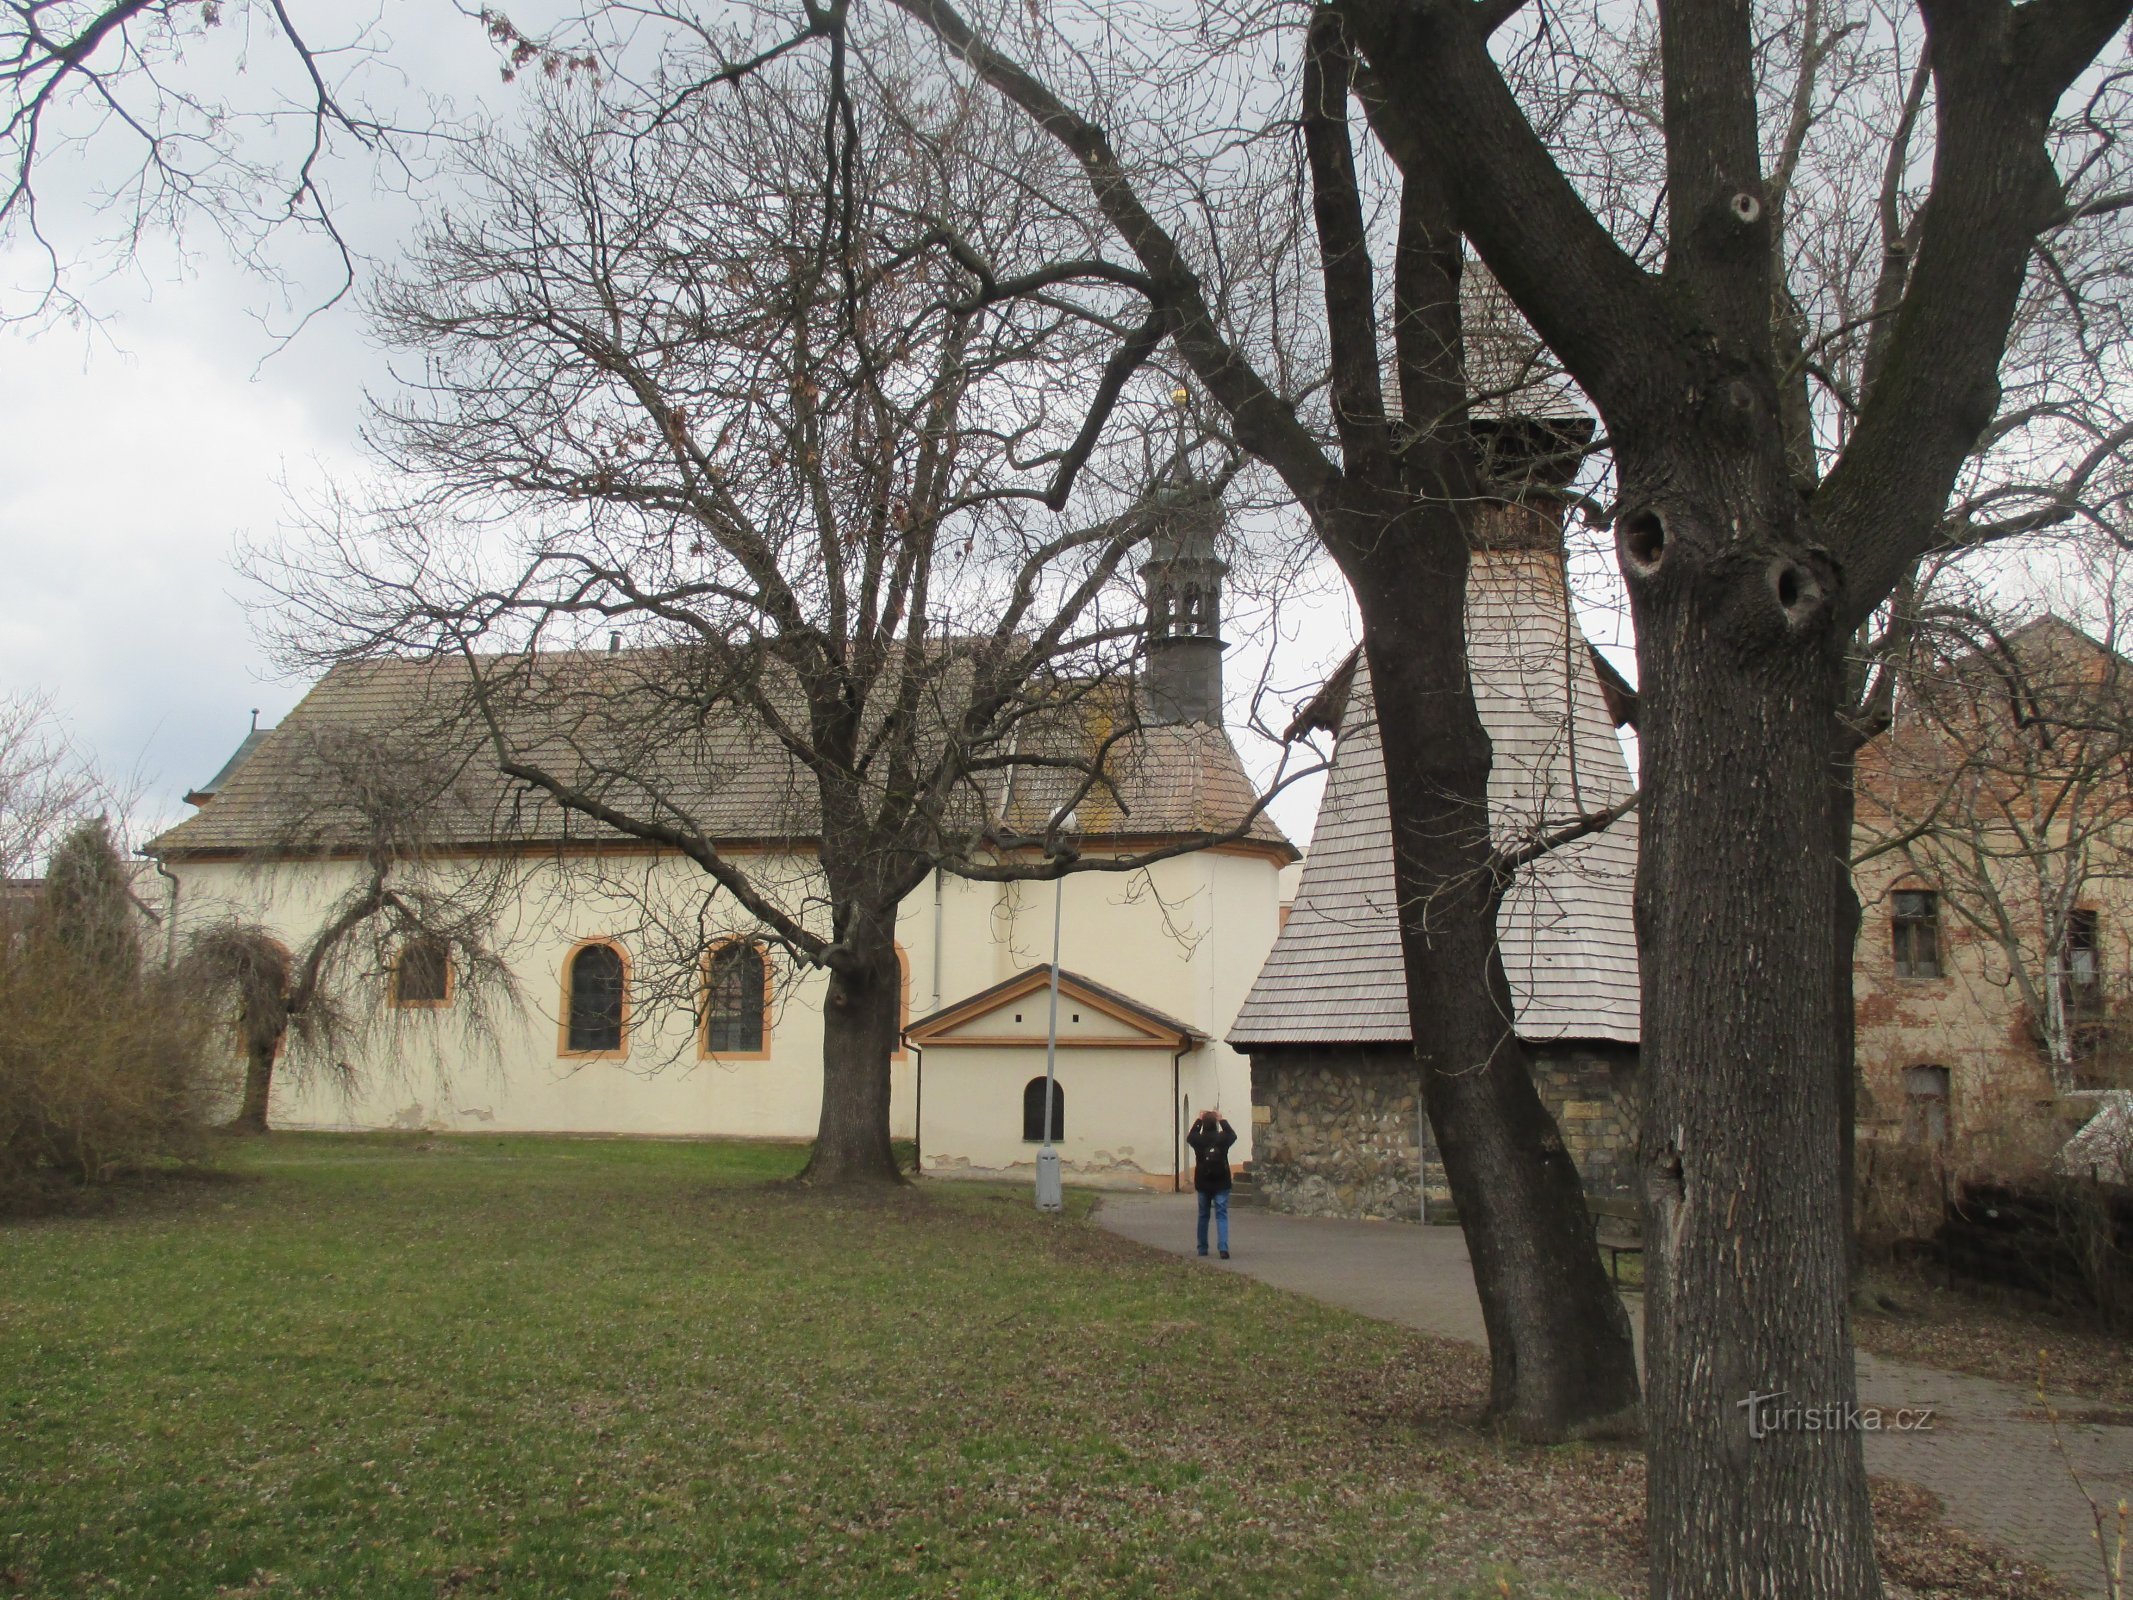 Église de St. Ludmila (Mělník)